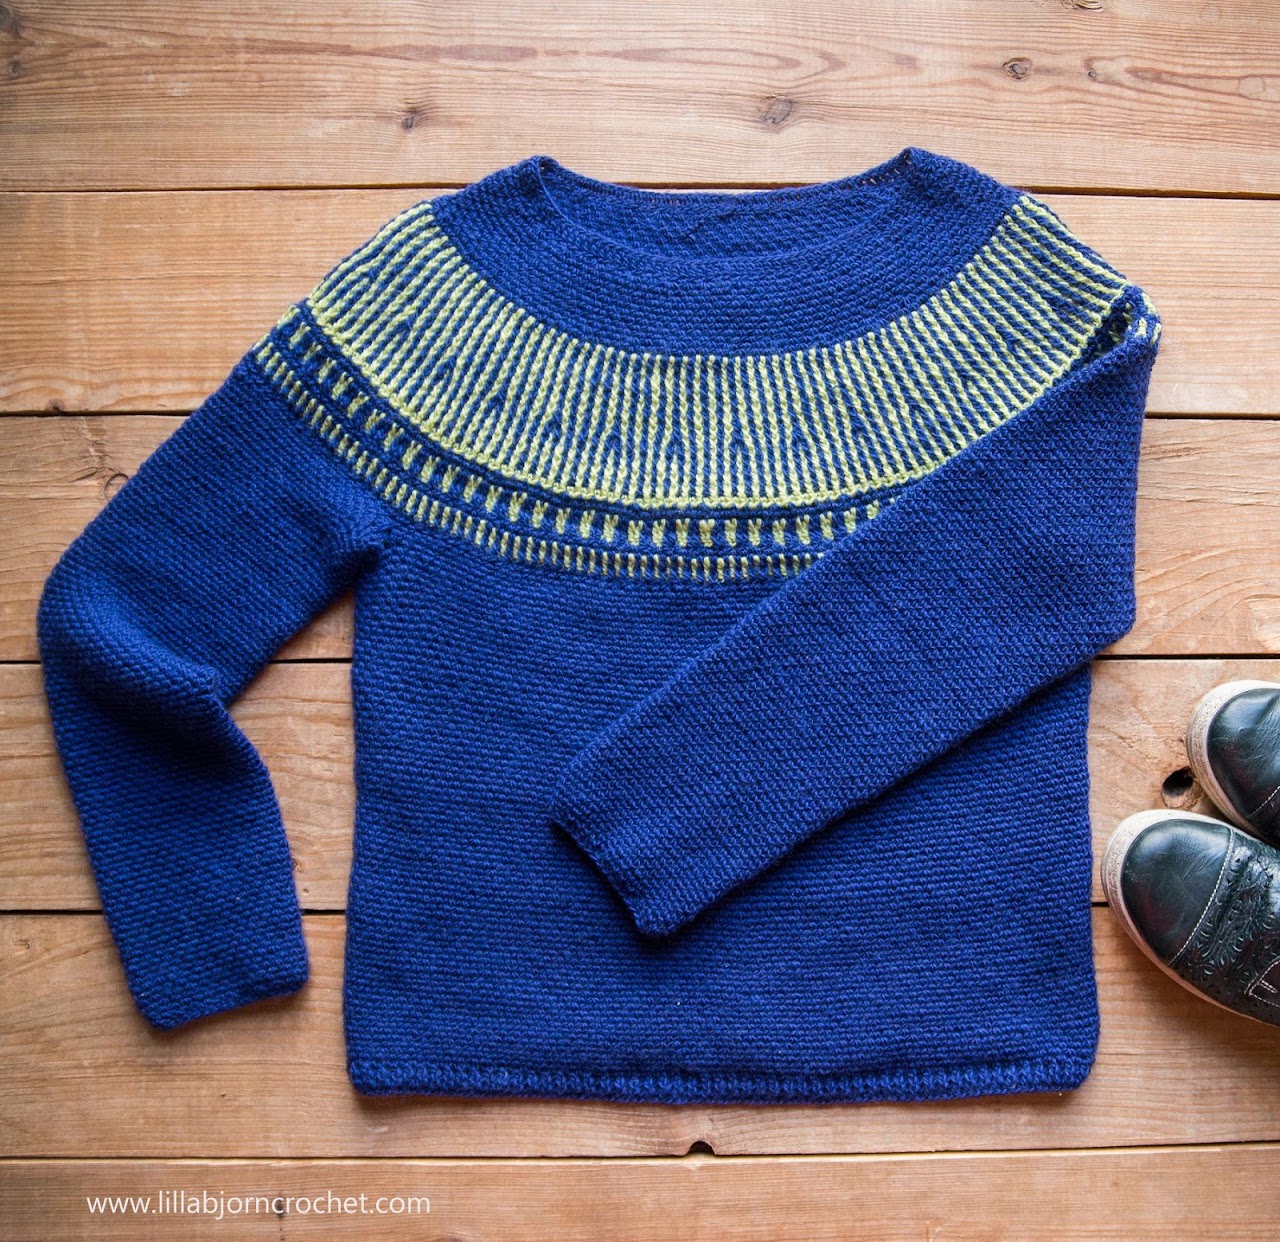 Esja Sweater crochet pattern by www.lillabjorncrochet.com